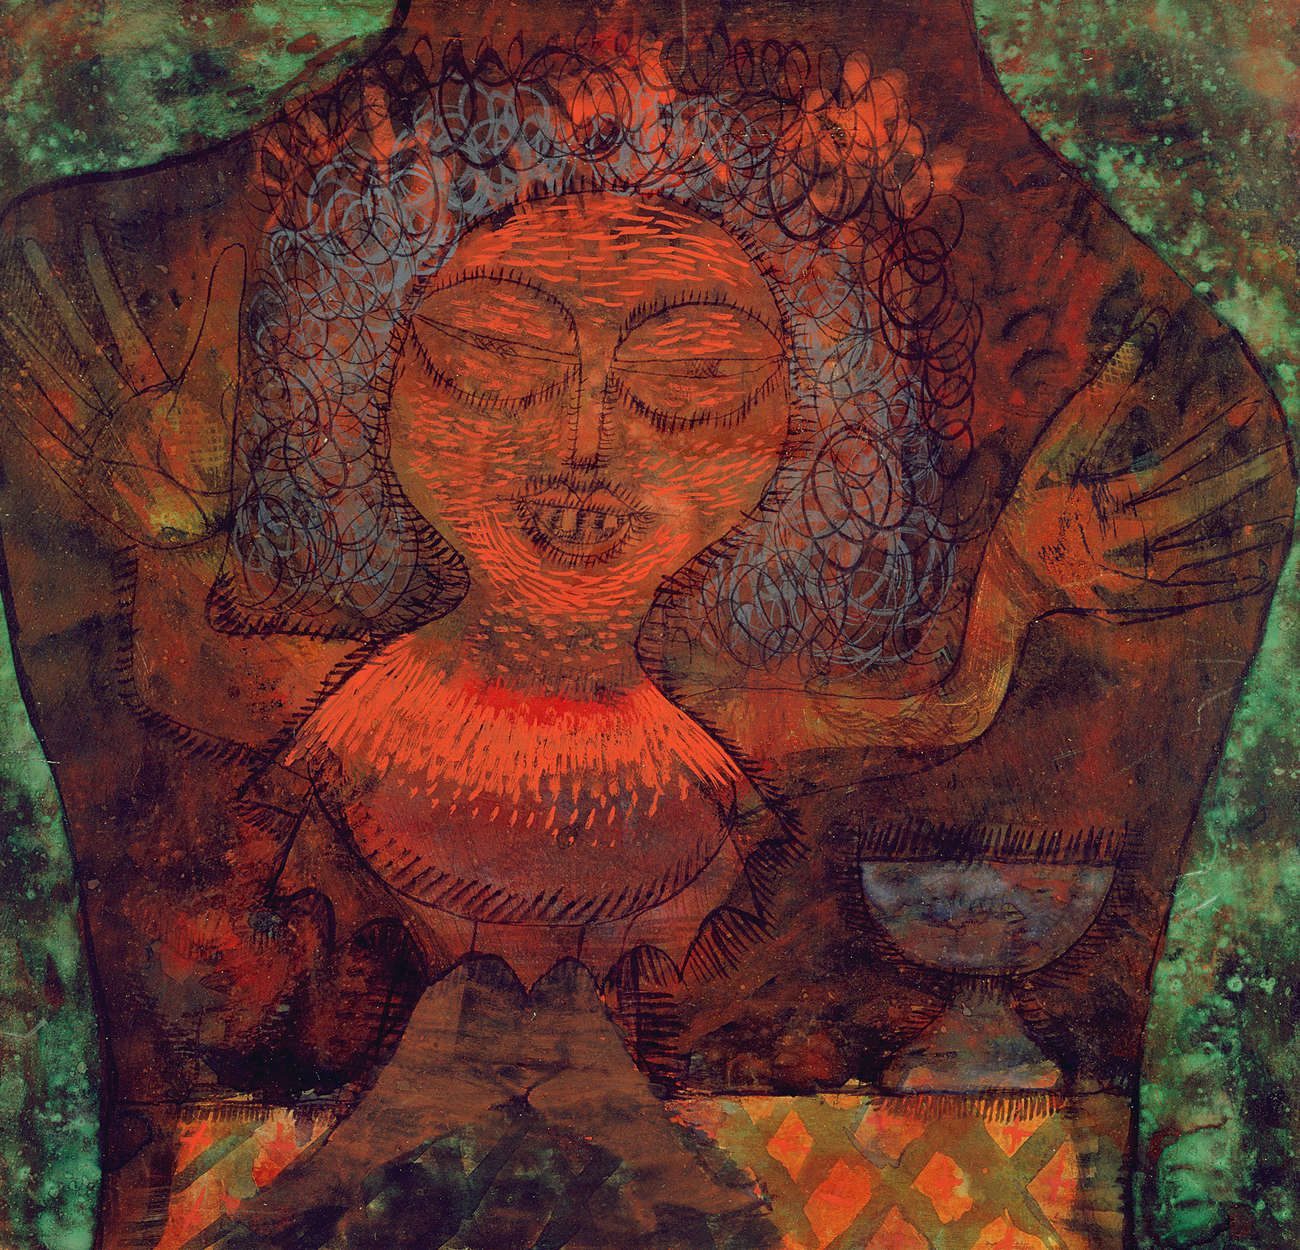             Fotomurali "Profeta" di Paul Klee
        